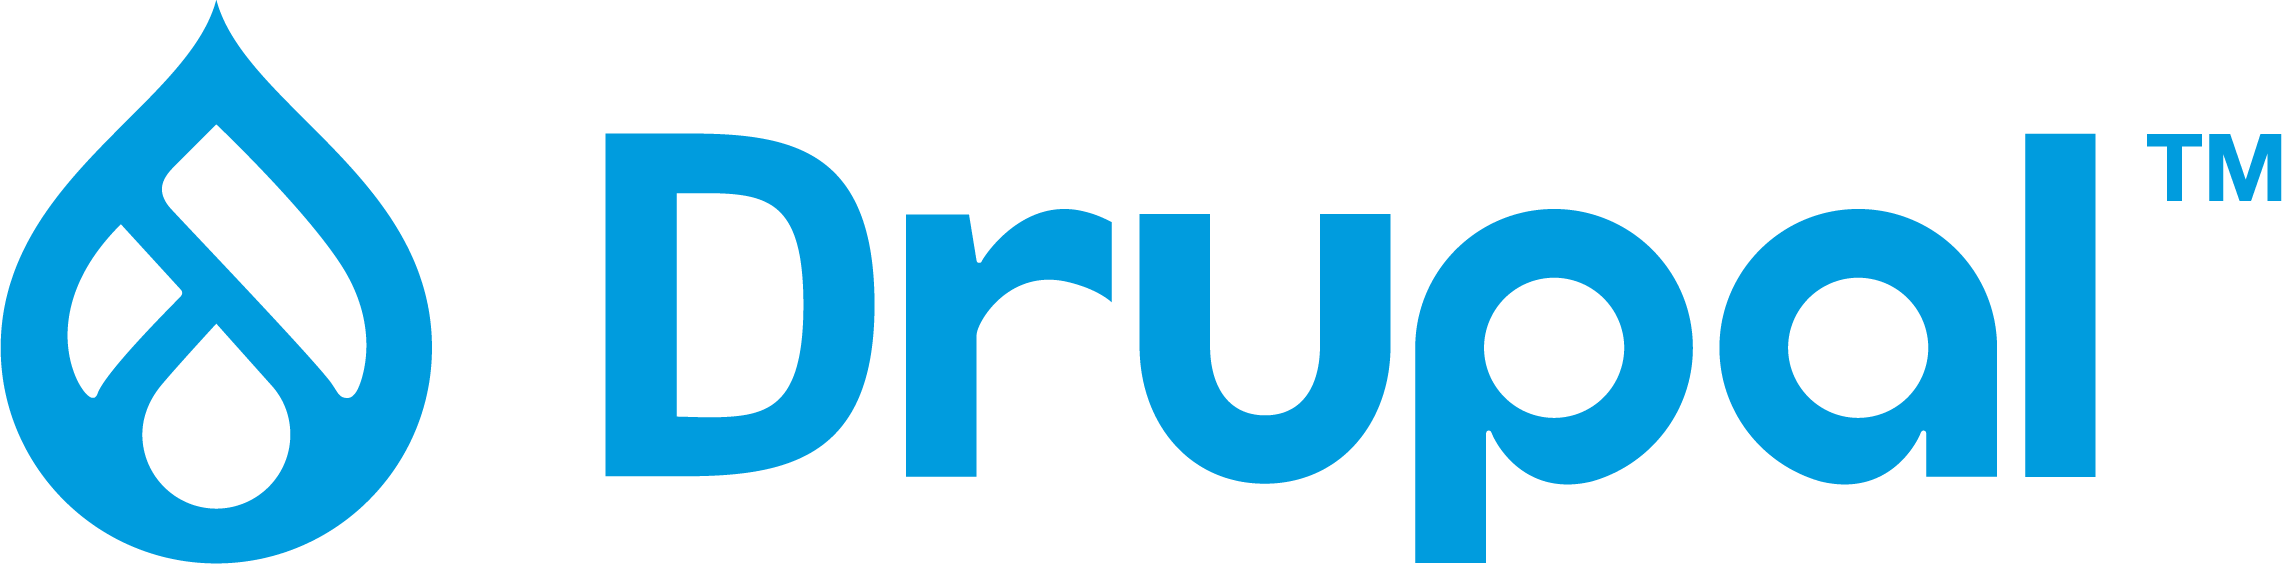 Drupal Logo Wortmarke in Blau